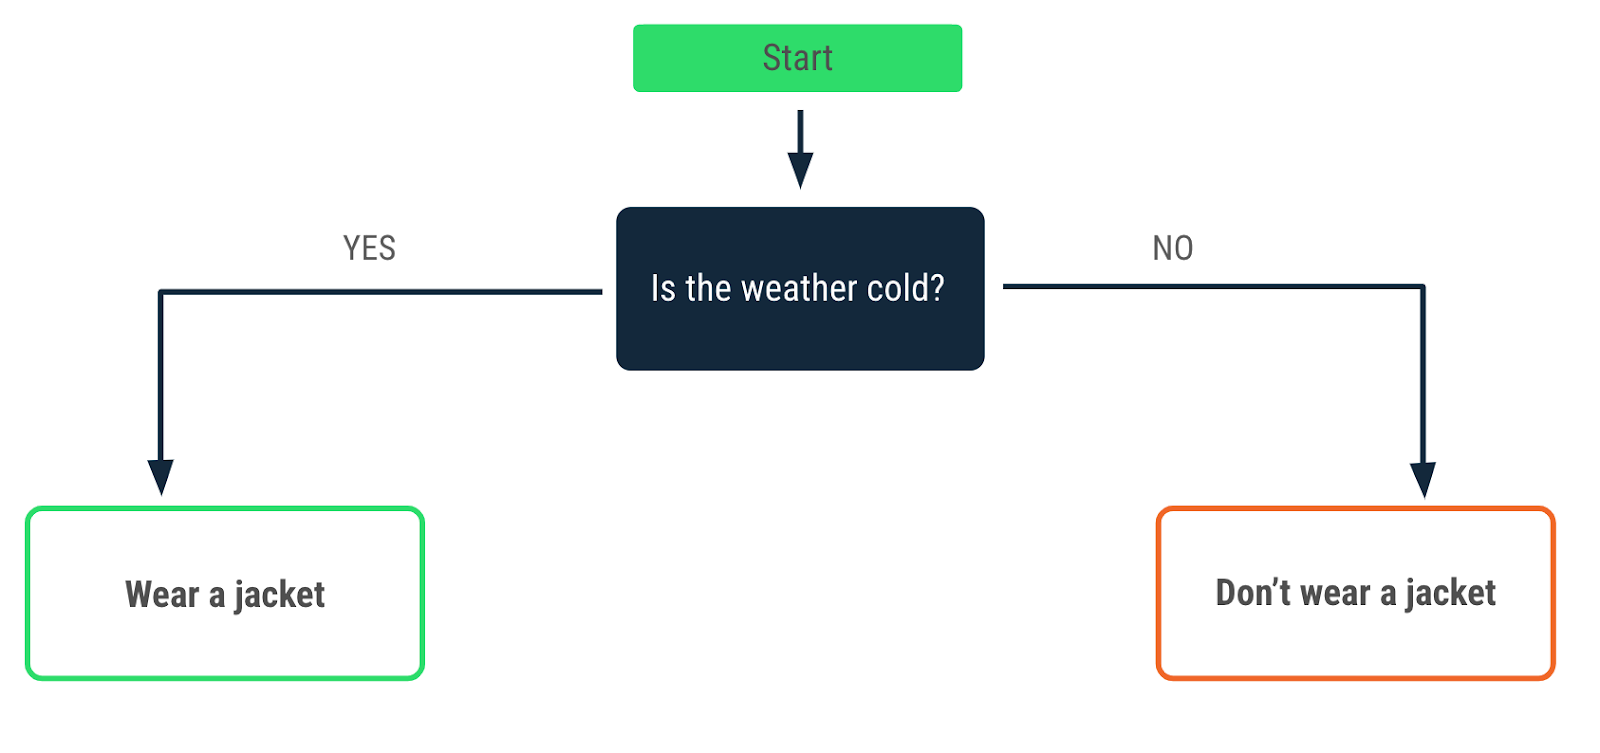 Diagrama de flujo en el que se describe una decisión que se toma cuando hace frío. Una flecha de afirmación apunta a un mensaje que indica "Llevar chaqueta" y una flecha de negación apunta al mensaje "No llevar chaqueta".